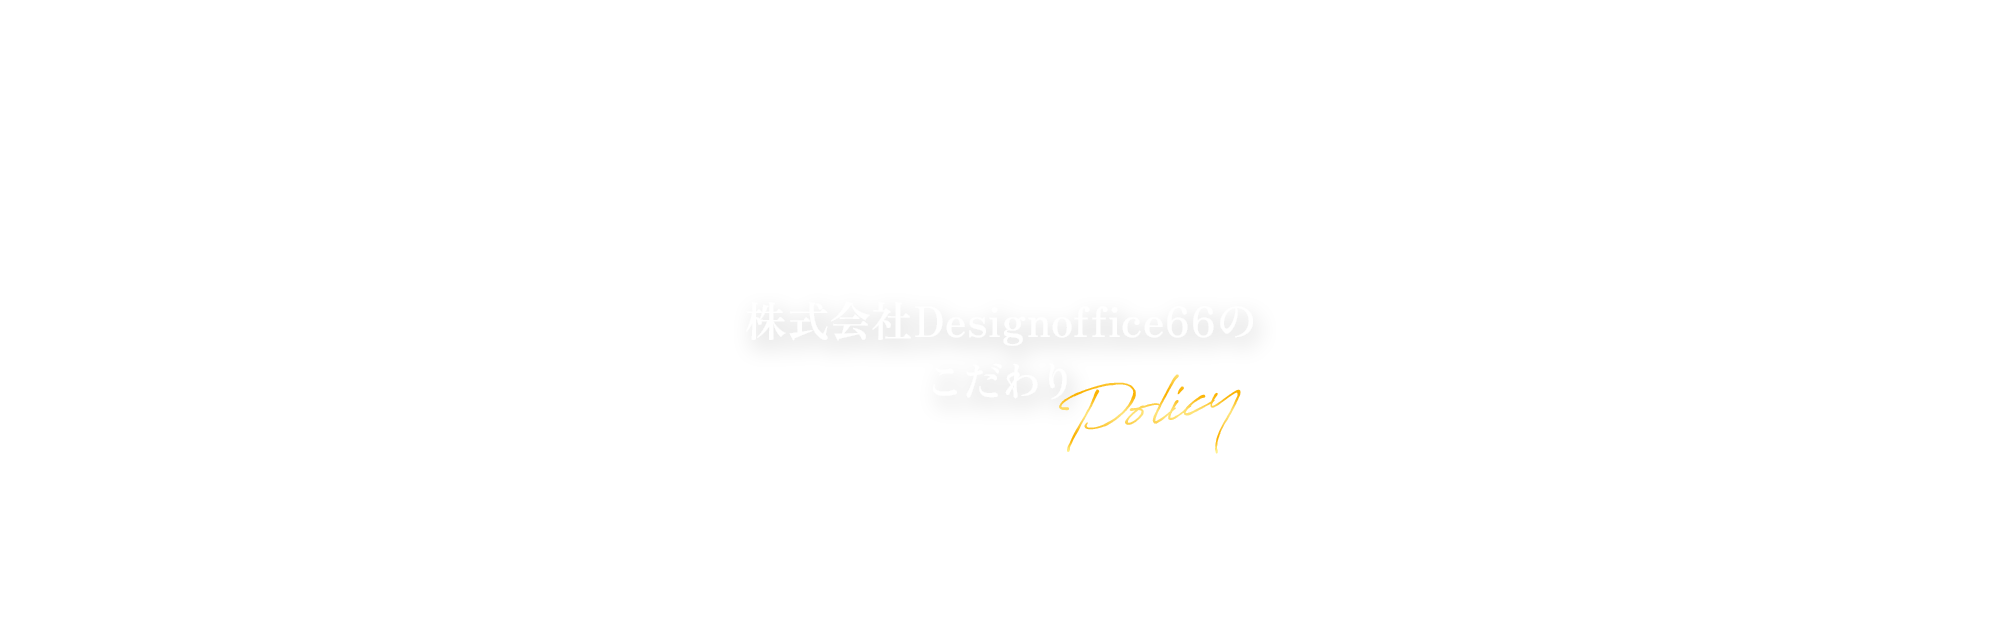 株式会社Design office66 こだわり